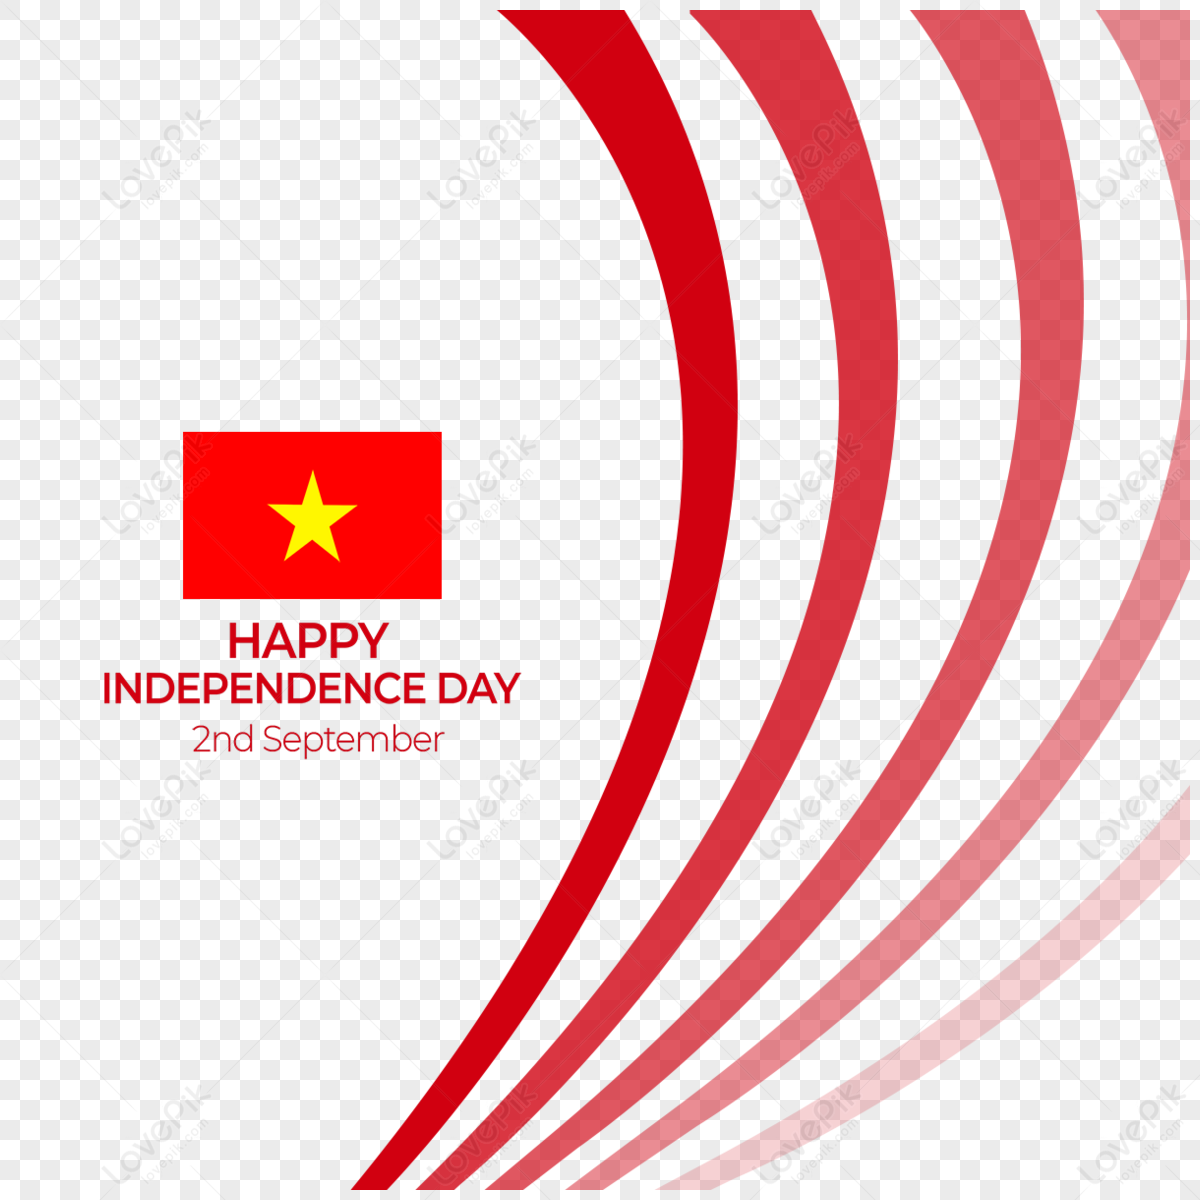 33 Background cờ Việt Nam JPG chất lượng cao - KS754 - Kho Stock